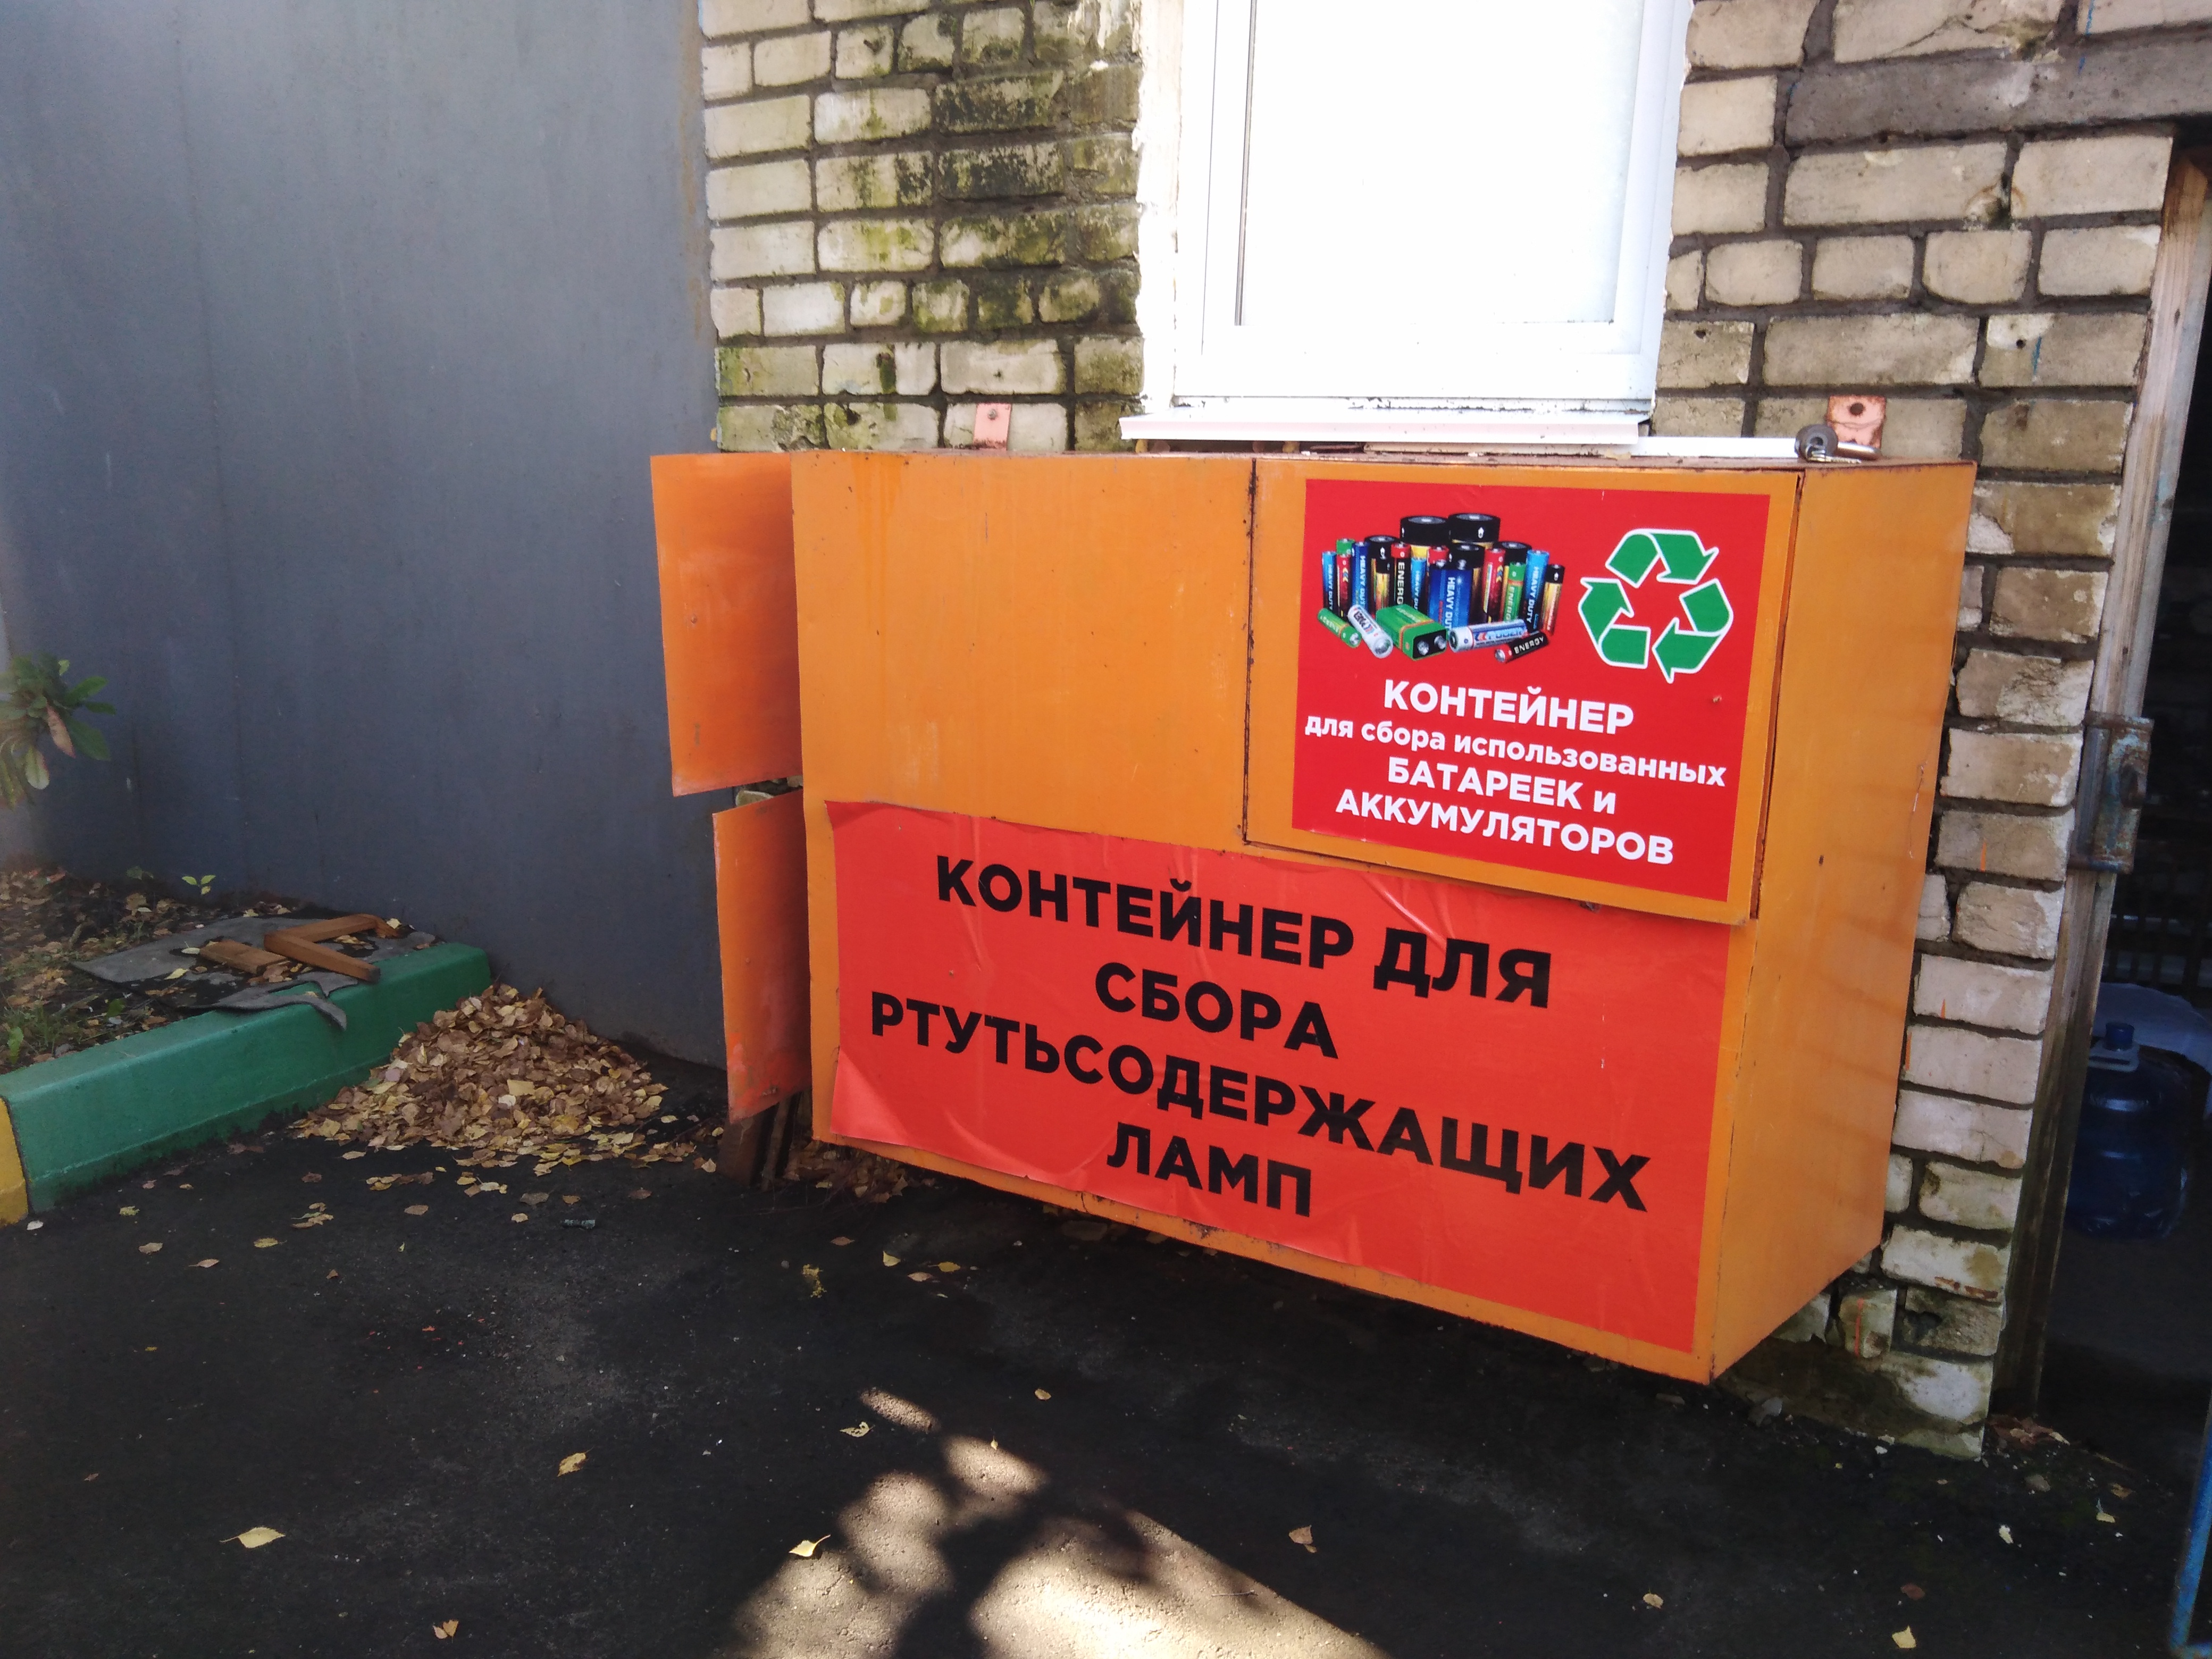 Инструкция: где в Воронеже сдать на утилизацию ртутьсодержащую лампочку